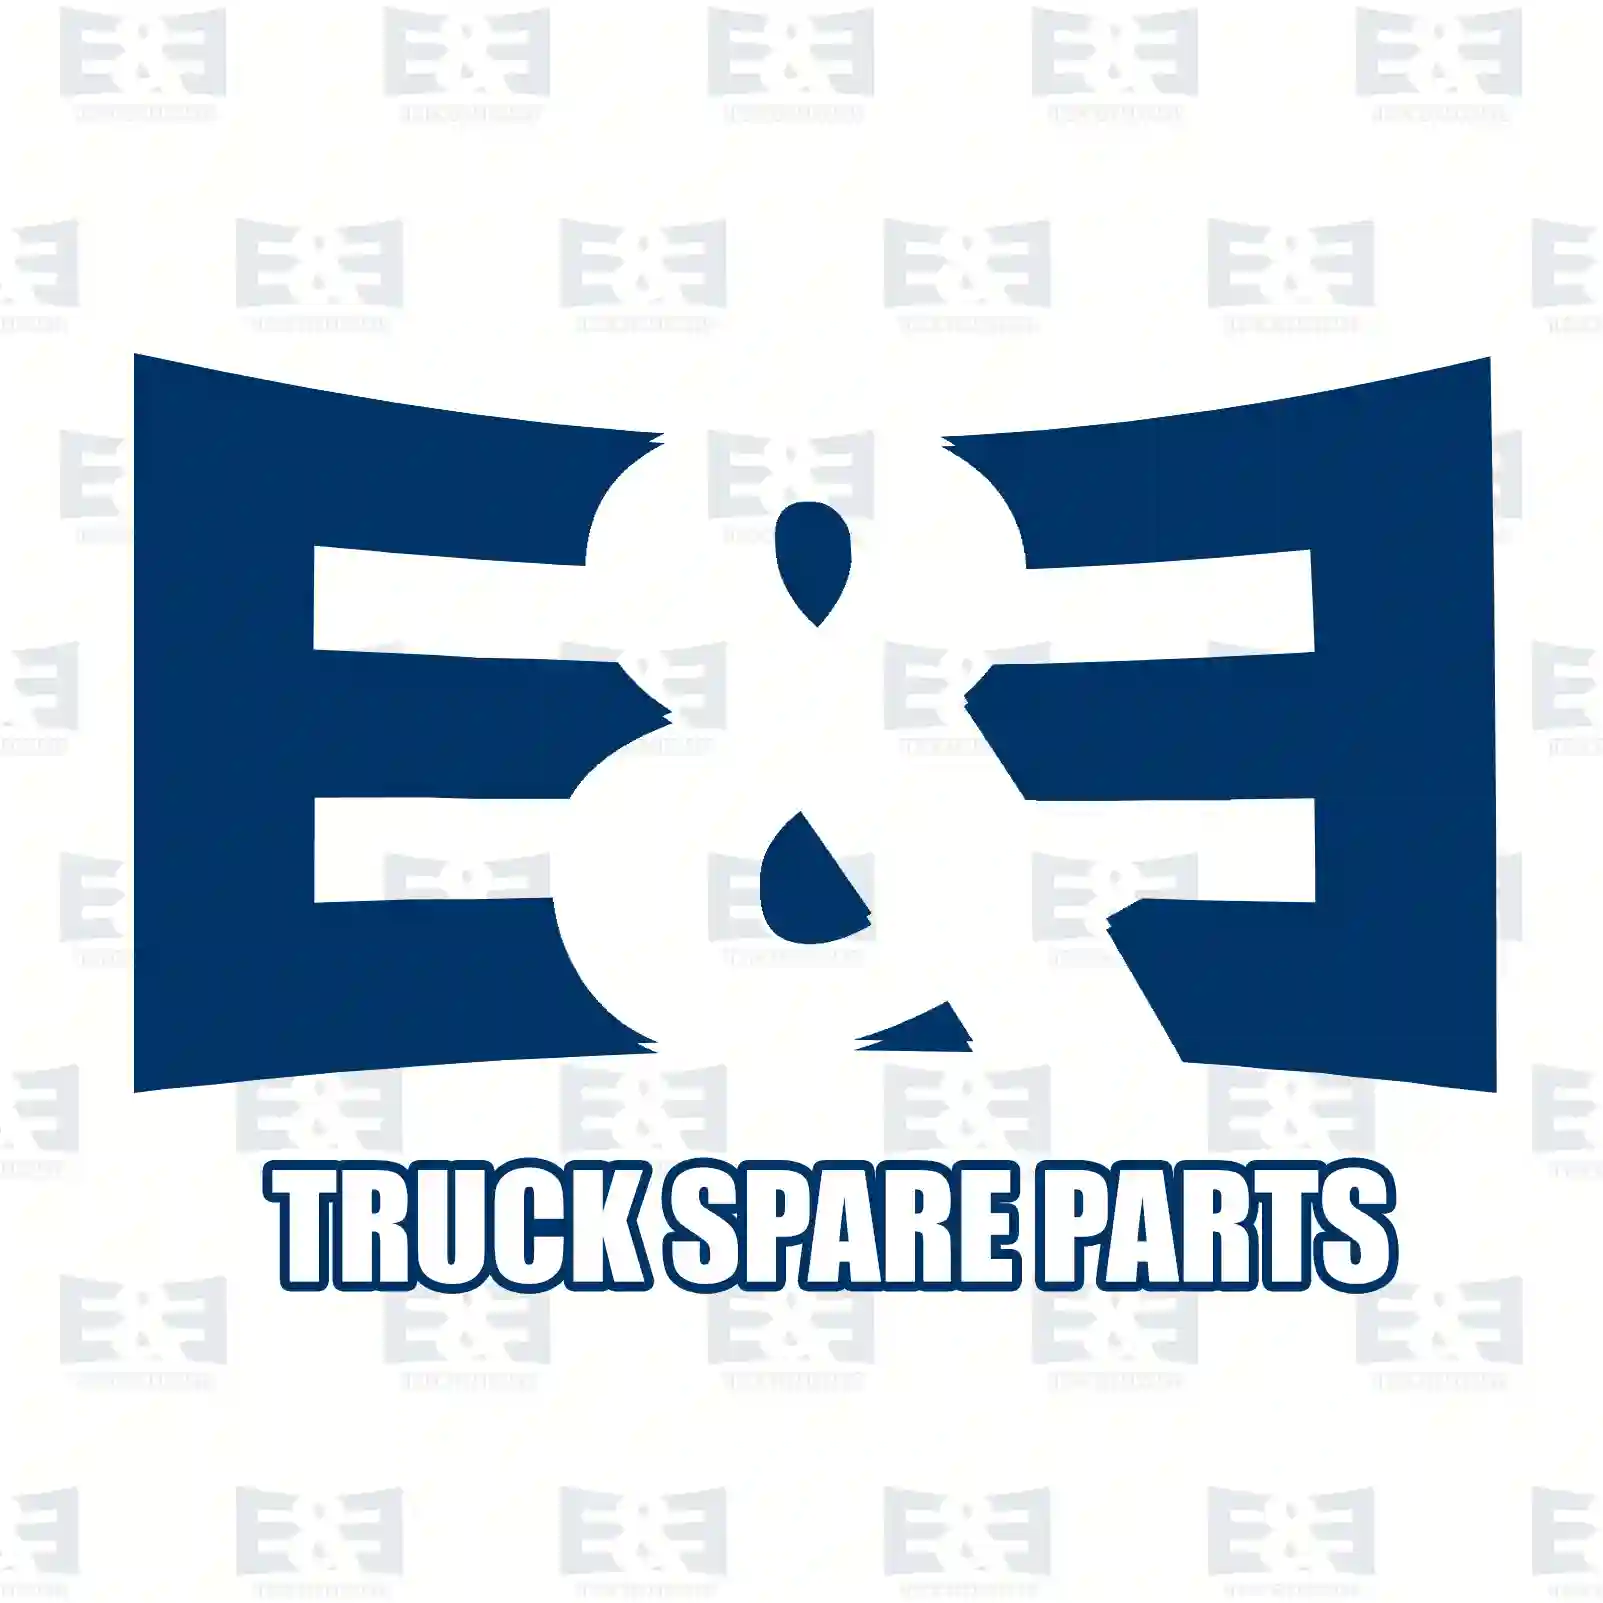 Cabin mounting, 2E2276425, 81621580039, 81621582030, 2V5887271B ||  2E2276425 E&E Truck Spare Parts | Truck Spare Parts, Auotomotive Spare Parts Cabin mounting, 2E2276425, 81621580039, 81621582030, 2V5887271B ||  2E2276425 E&E Truck Spare Parts | Truck Spare Parts, Auotomotive Spare Parts